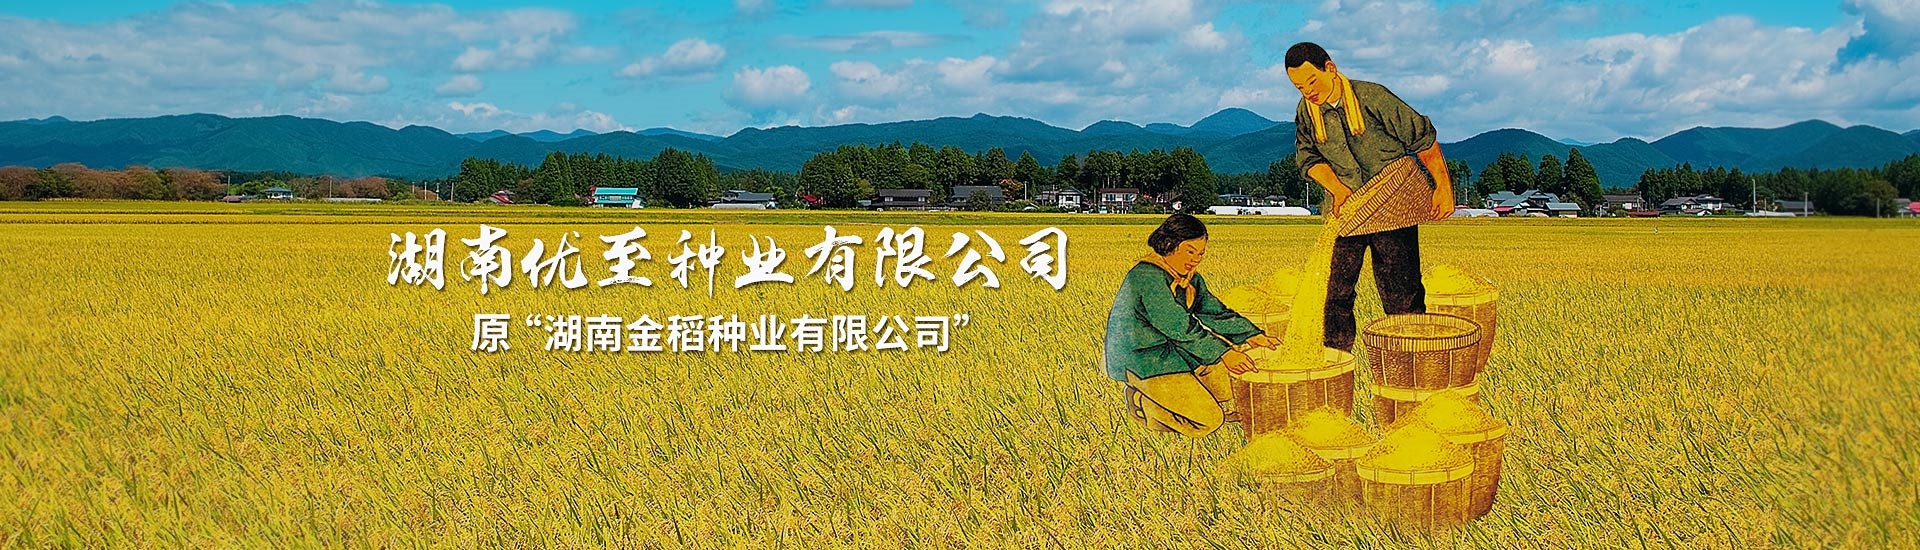 原“湖南金稻种业有限公司”更名为“湖南优至种业有限公司”